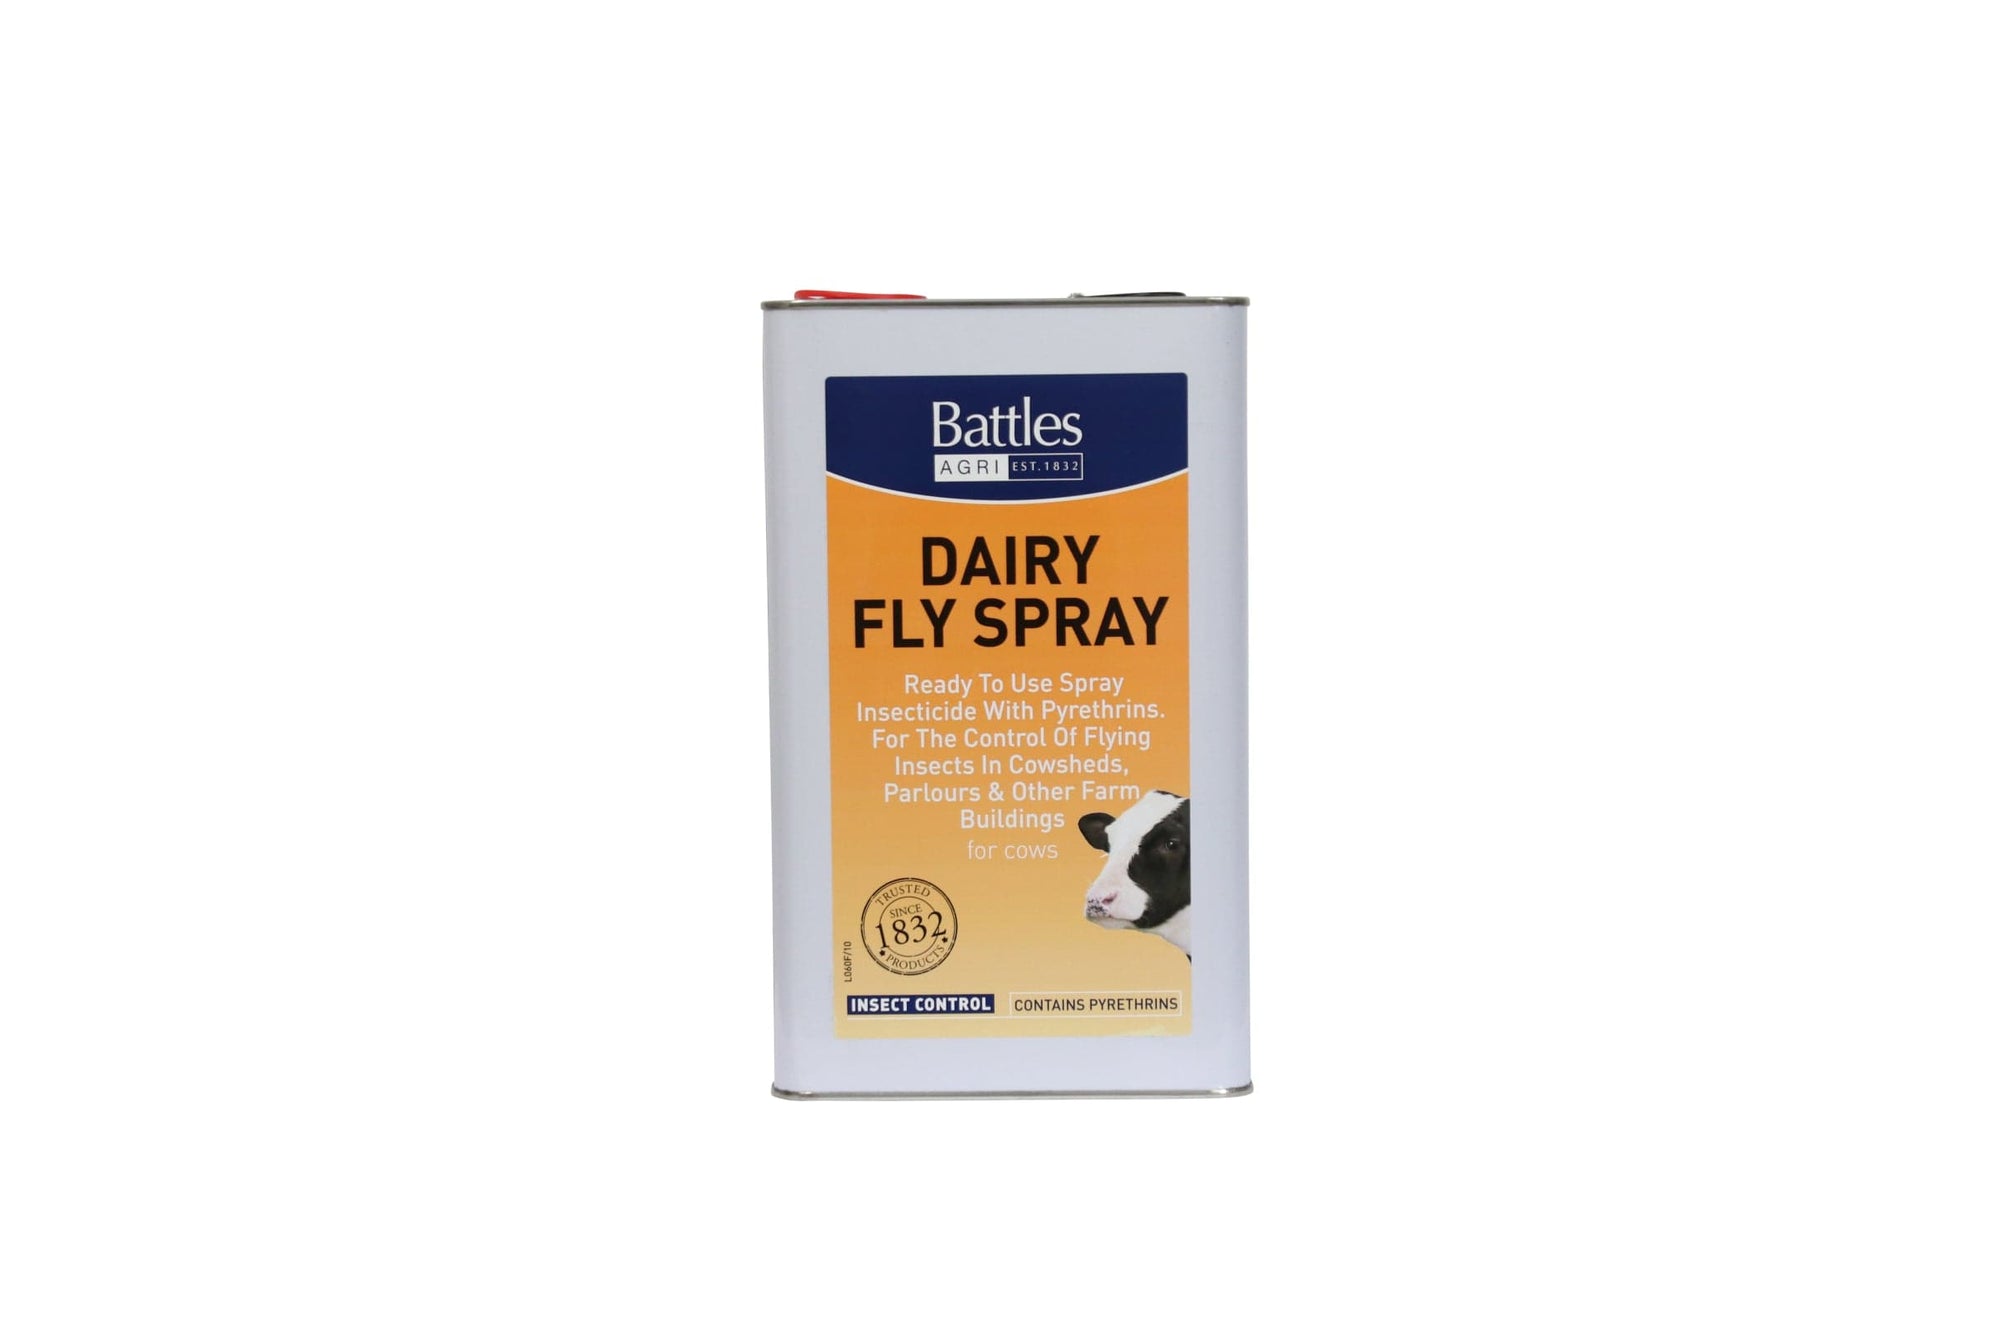 Battles dairy fly spray